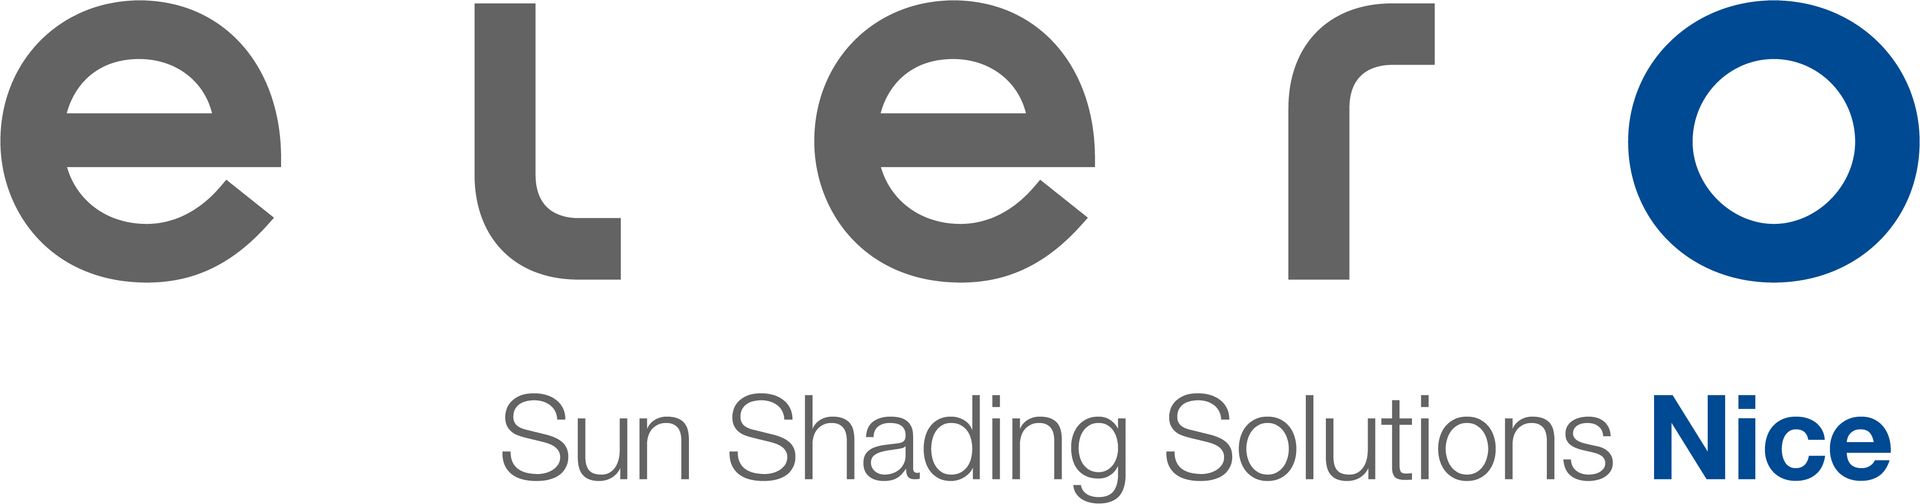 elero Sun Shading Solutions - Logo